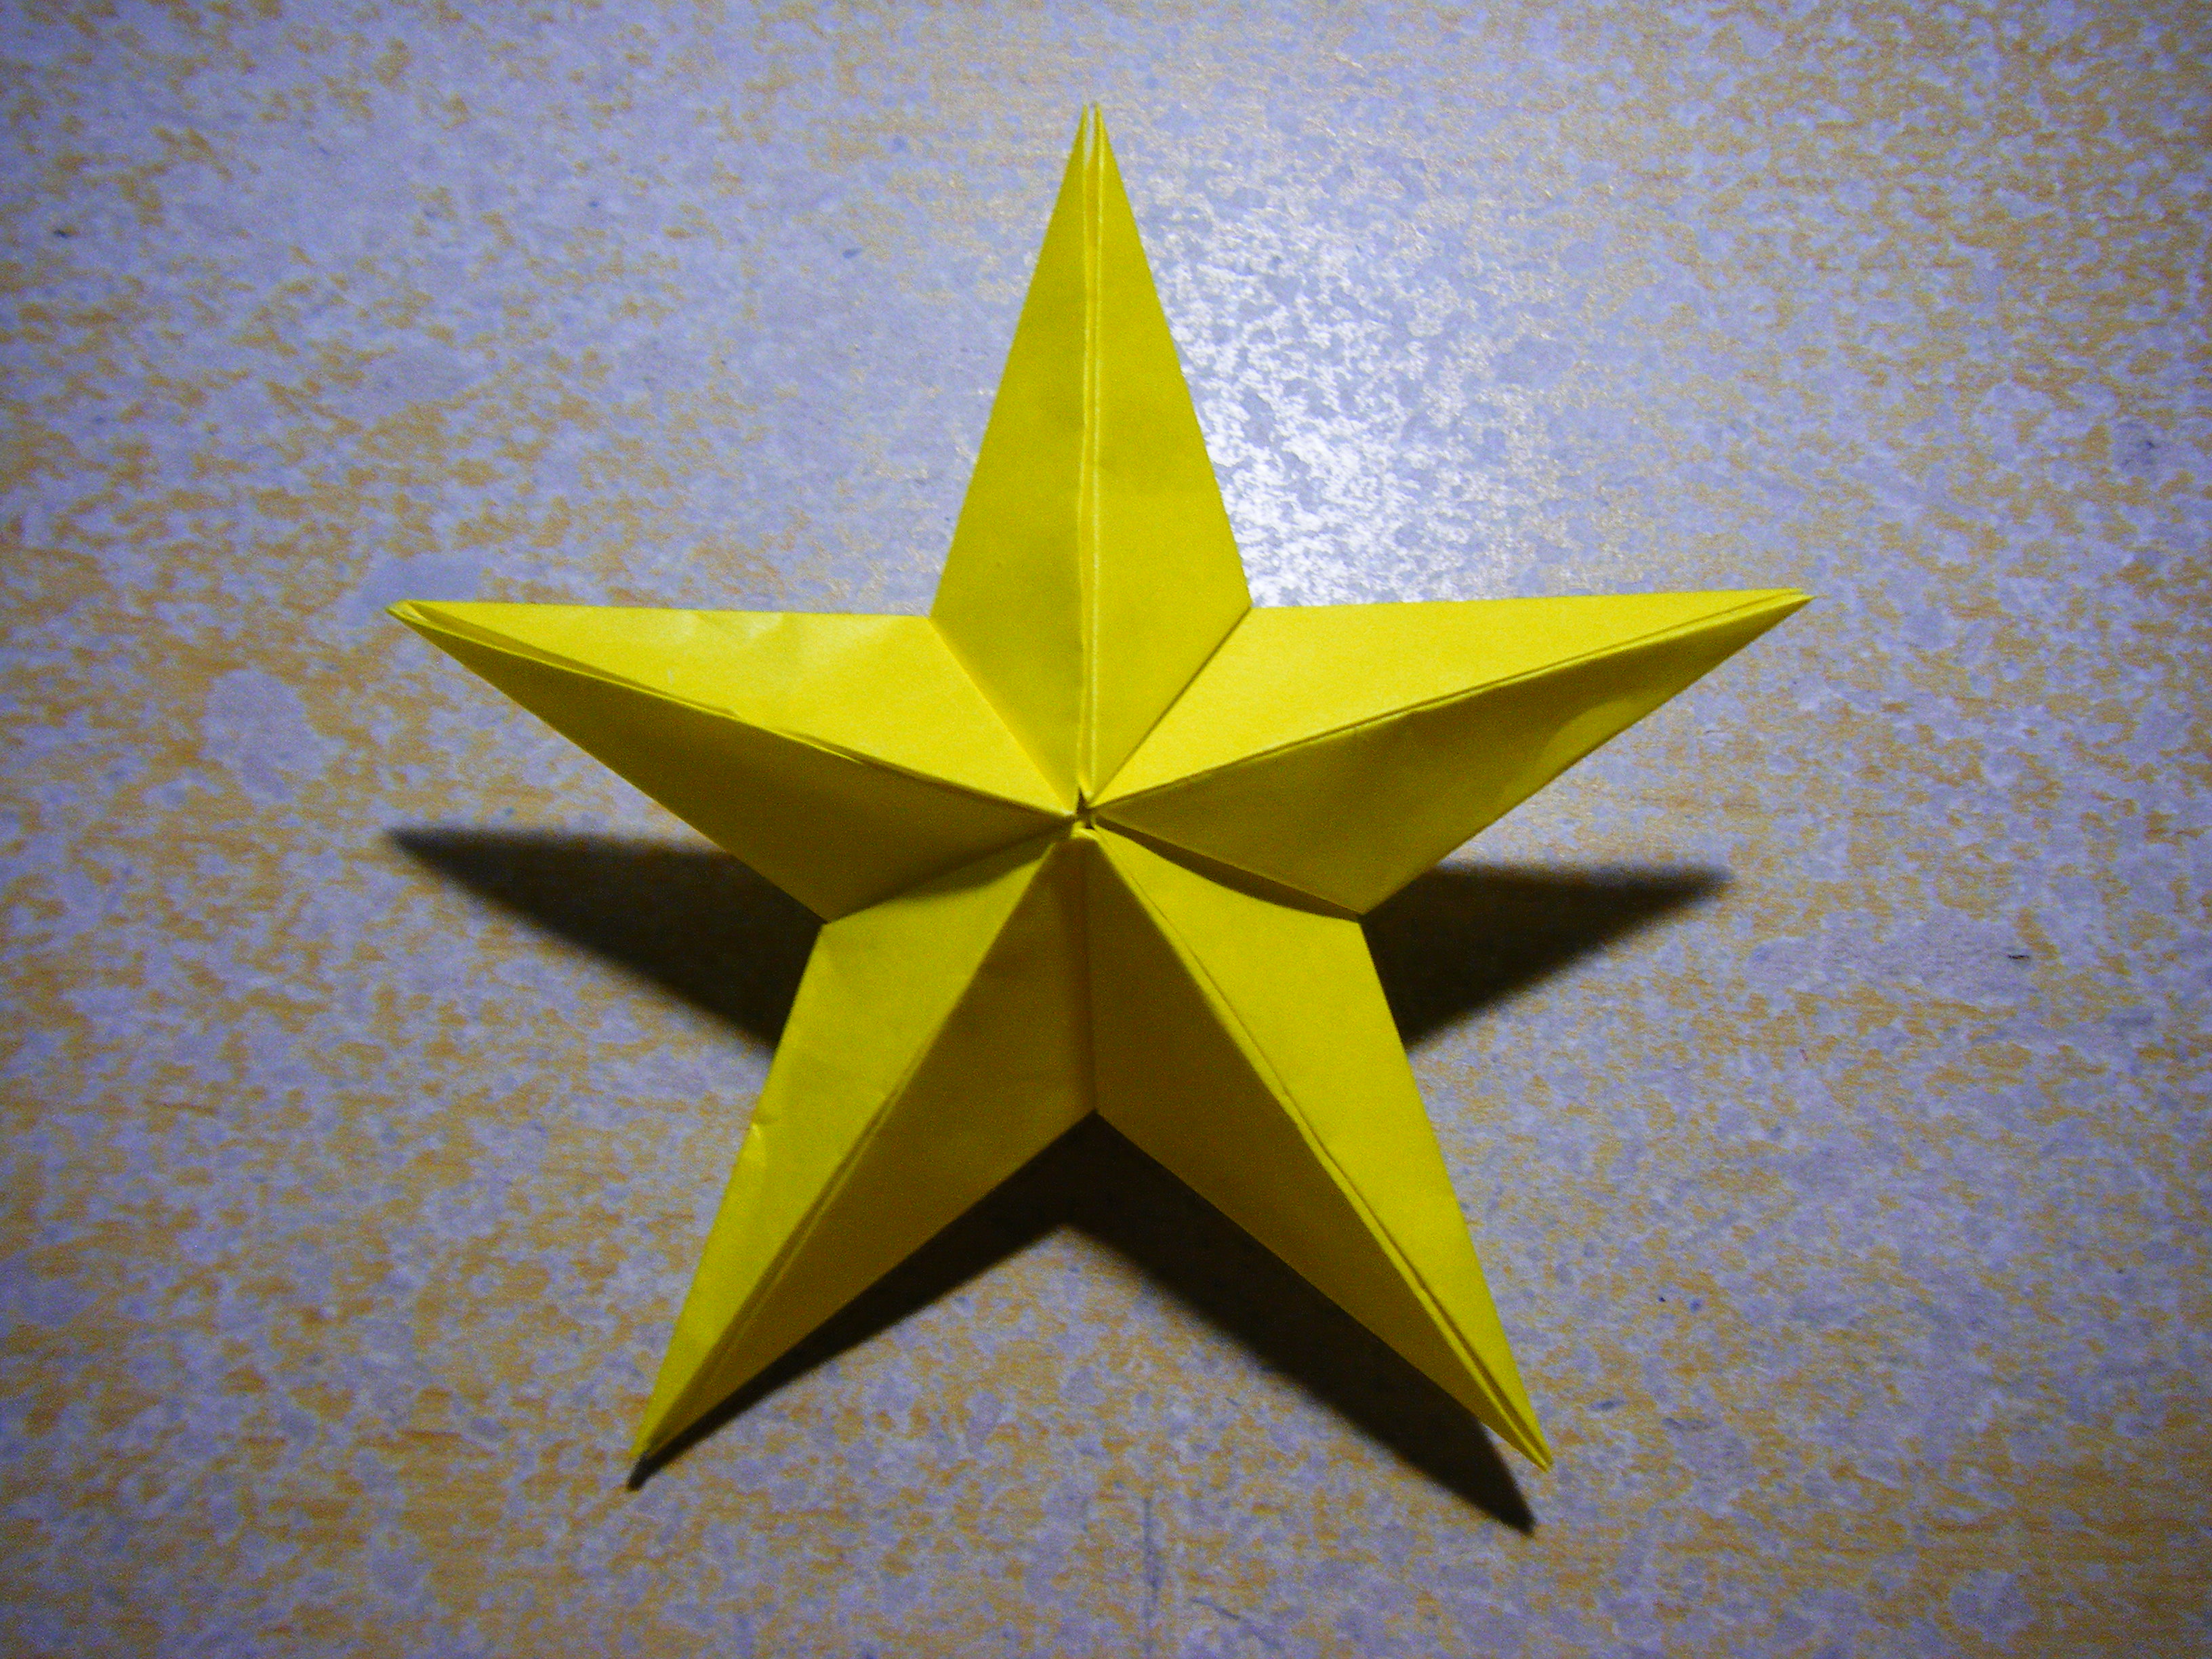 【クリスマス】折り紙での立体の星のオーナメントの作り方は簡単!? ポッチャリータイムズ